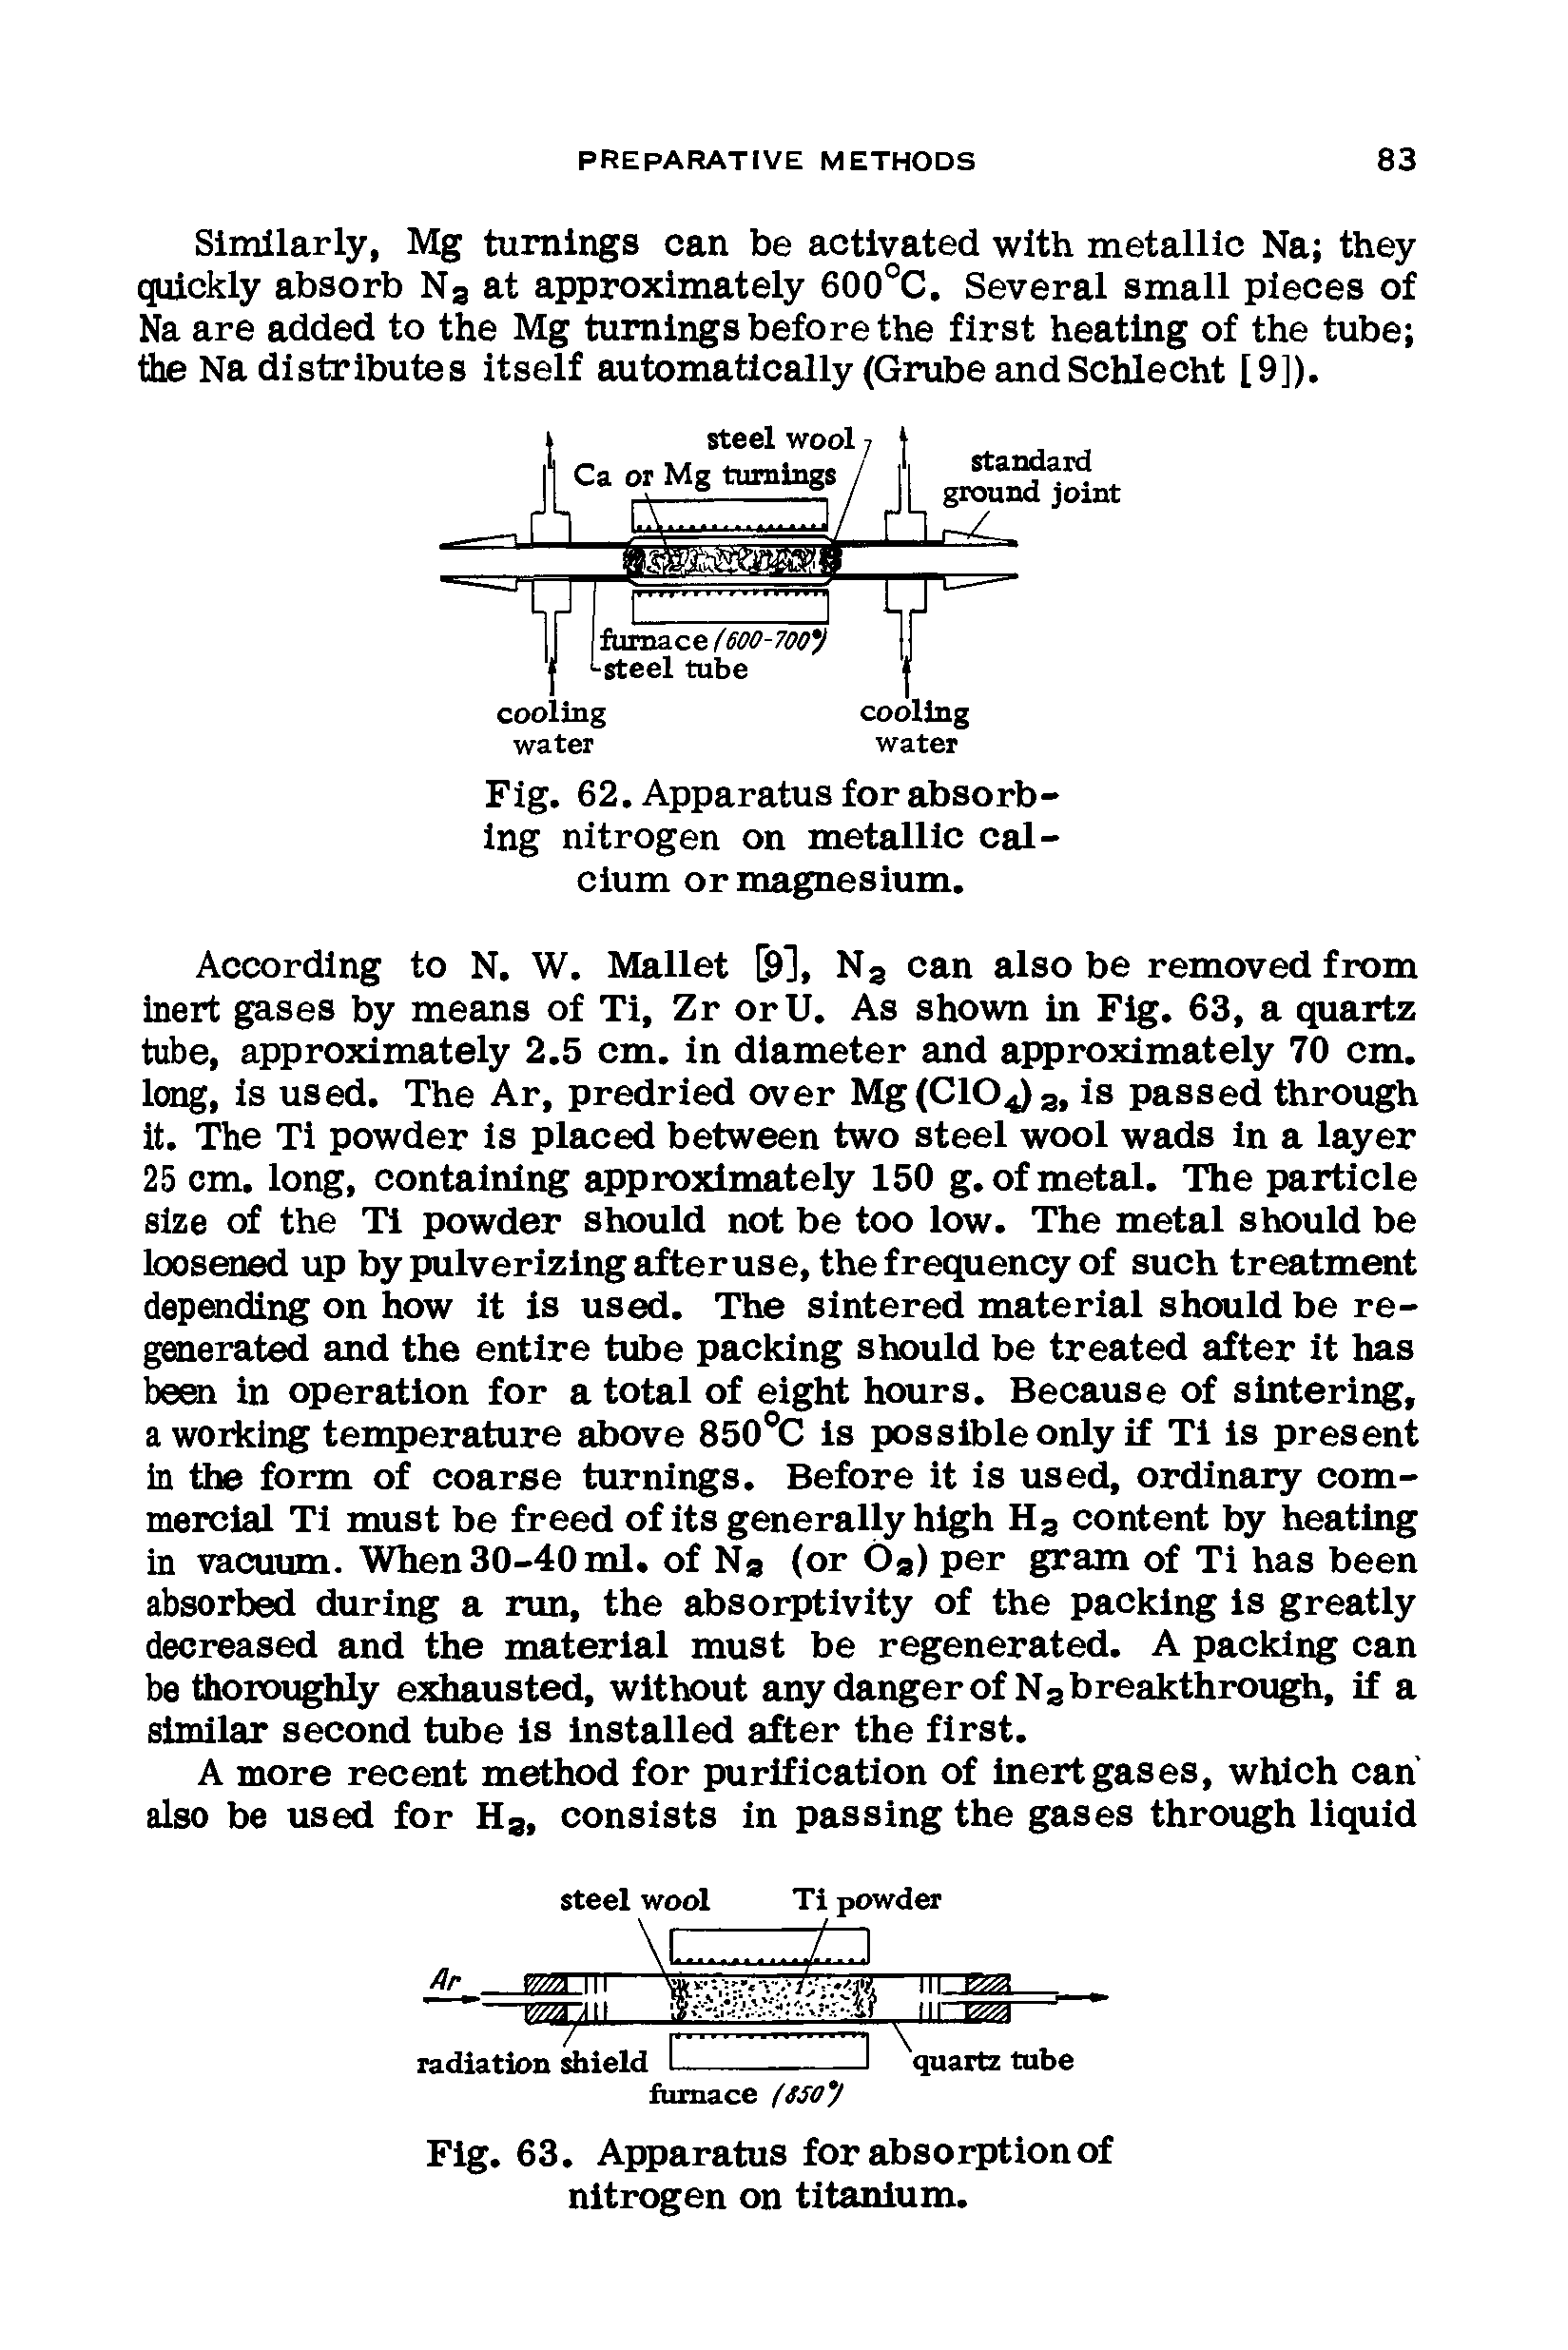 Fig. 62. Apparatus for absorbing nitrogen on metallic calcium or magnesium.